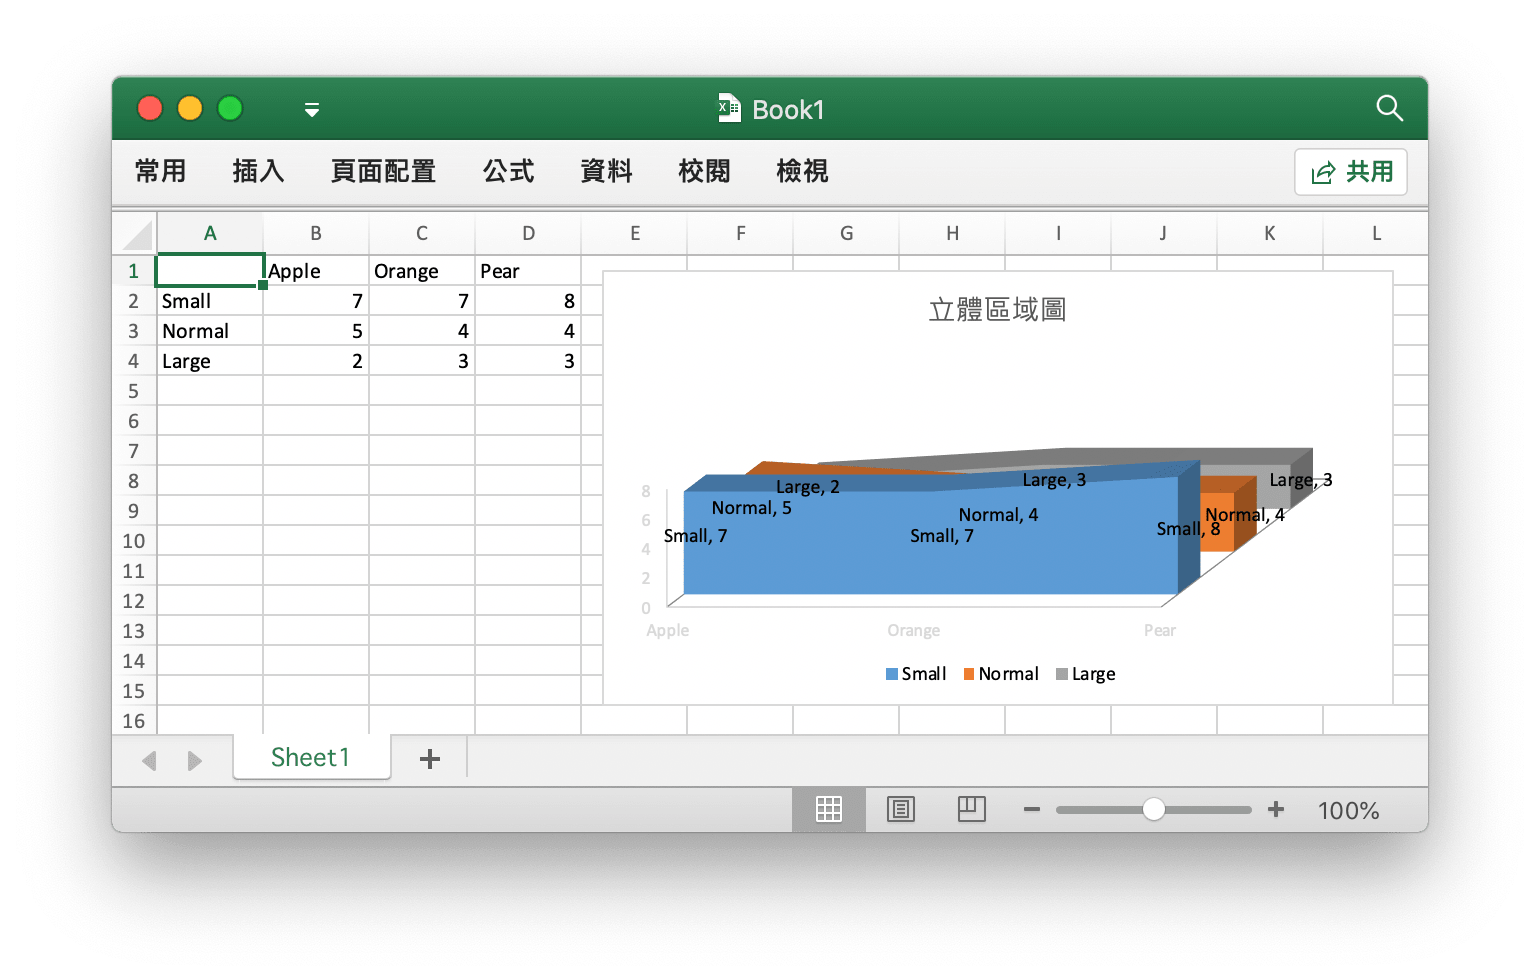 使用 Go 語言在 Excel 文檔中創建立體區域圖